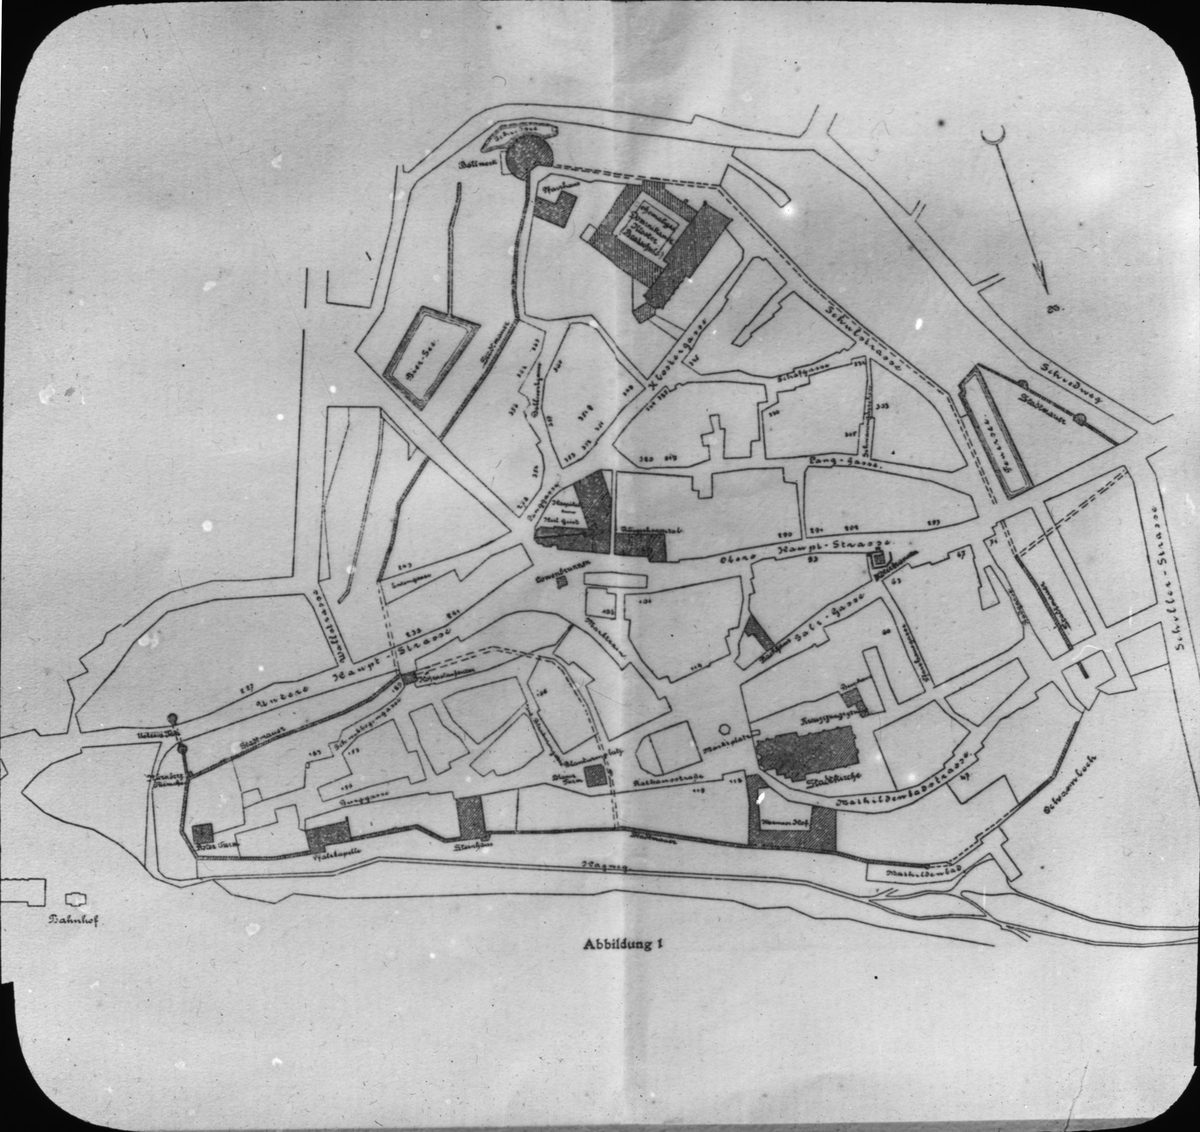 Skioptikonbild med motiv av karta över Wimpfen.
Bilden har förvarats i kartong märkt: Resan 1908. Wimpfen 8. XXIV. Text på bild: "Plan öfver Wimfen am Berg".